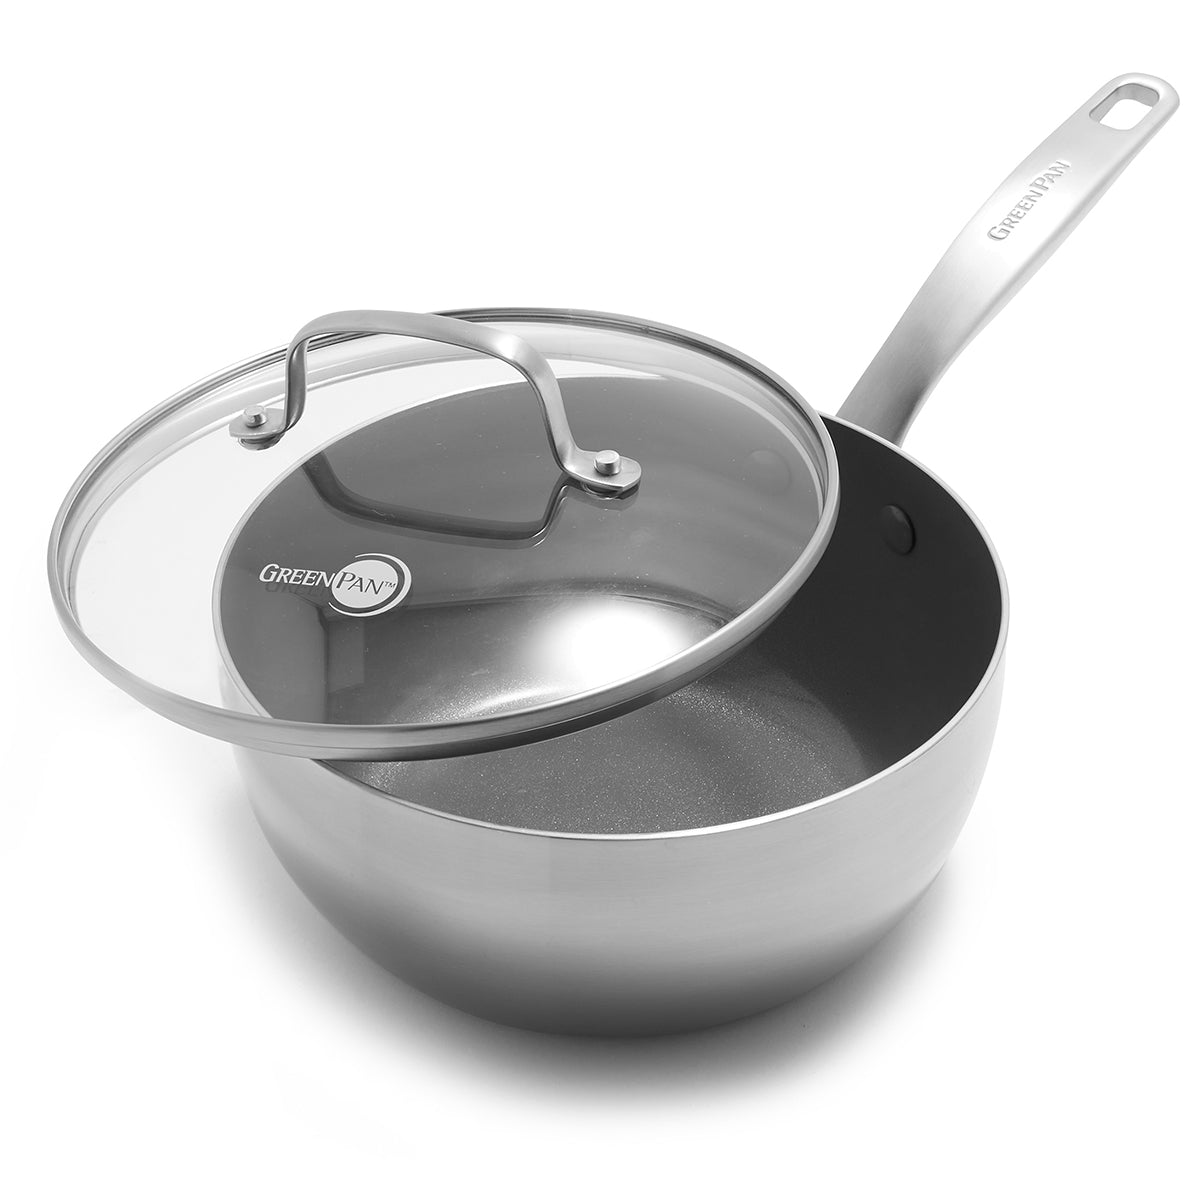 Nonstick Stainless Steel Saucier Pan